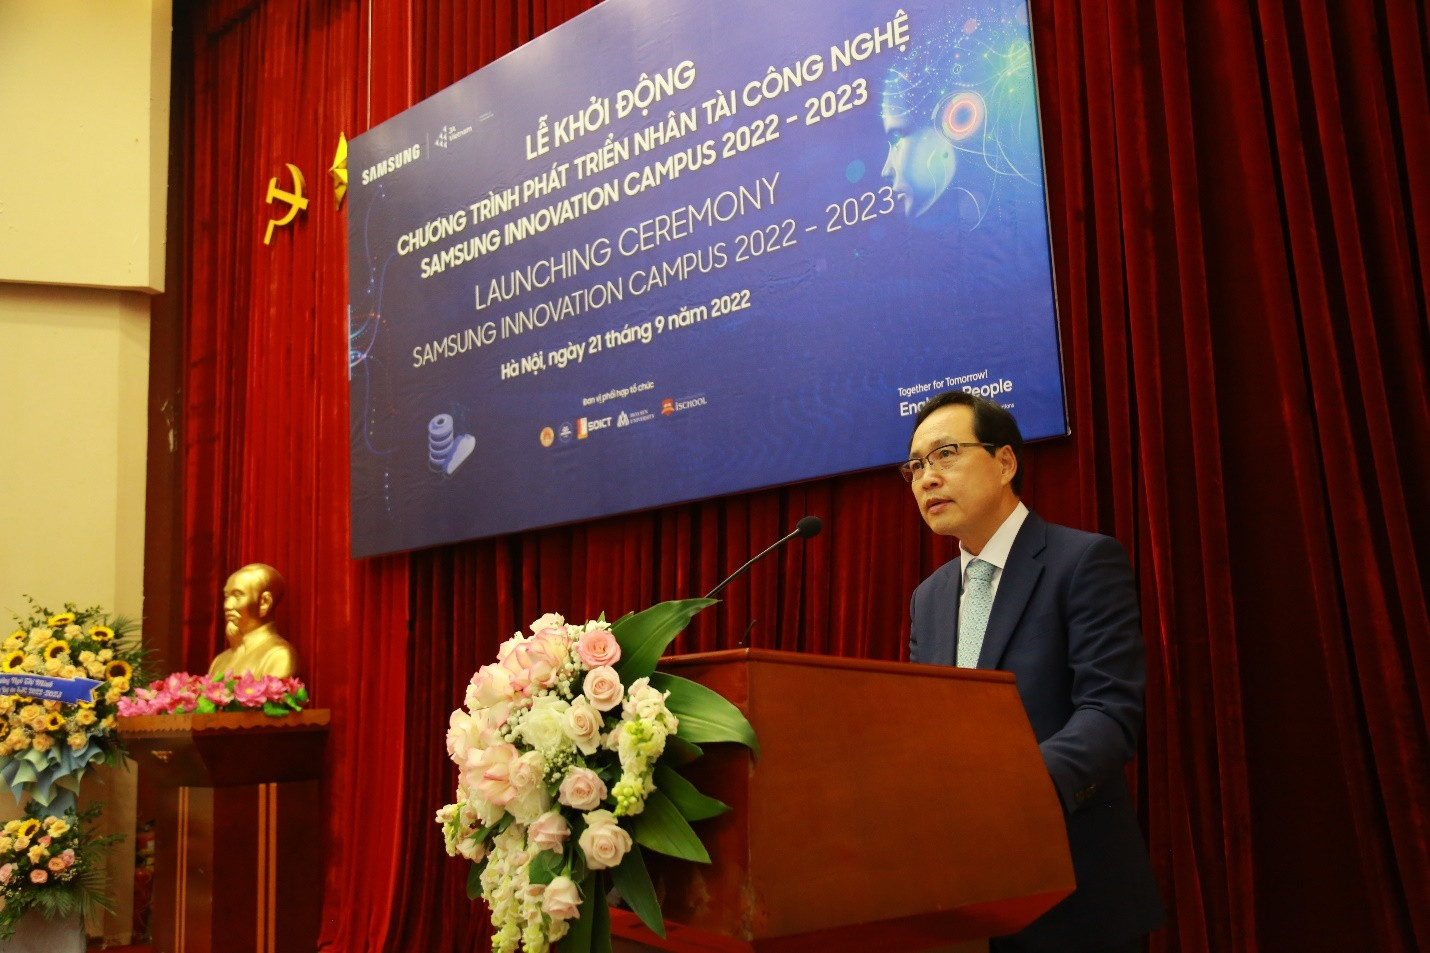 Samsung Việt Nam chính thức khởi động chương trình Samsung Innovation Campus 2022-2023 - ảnh 2